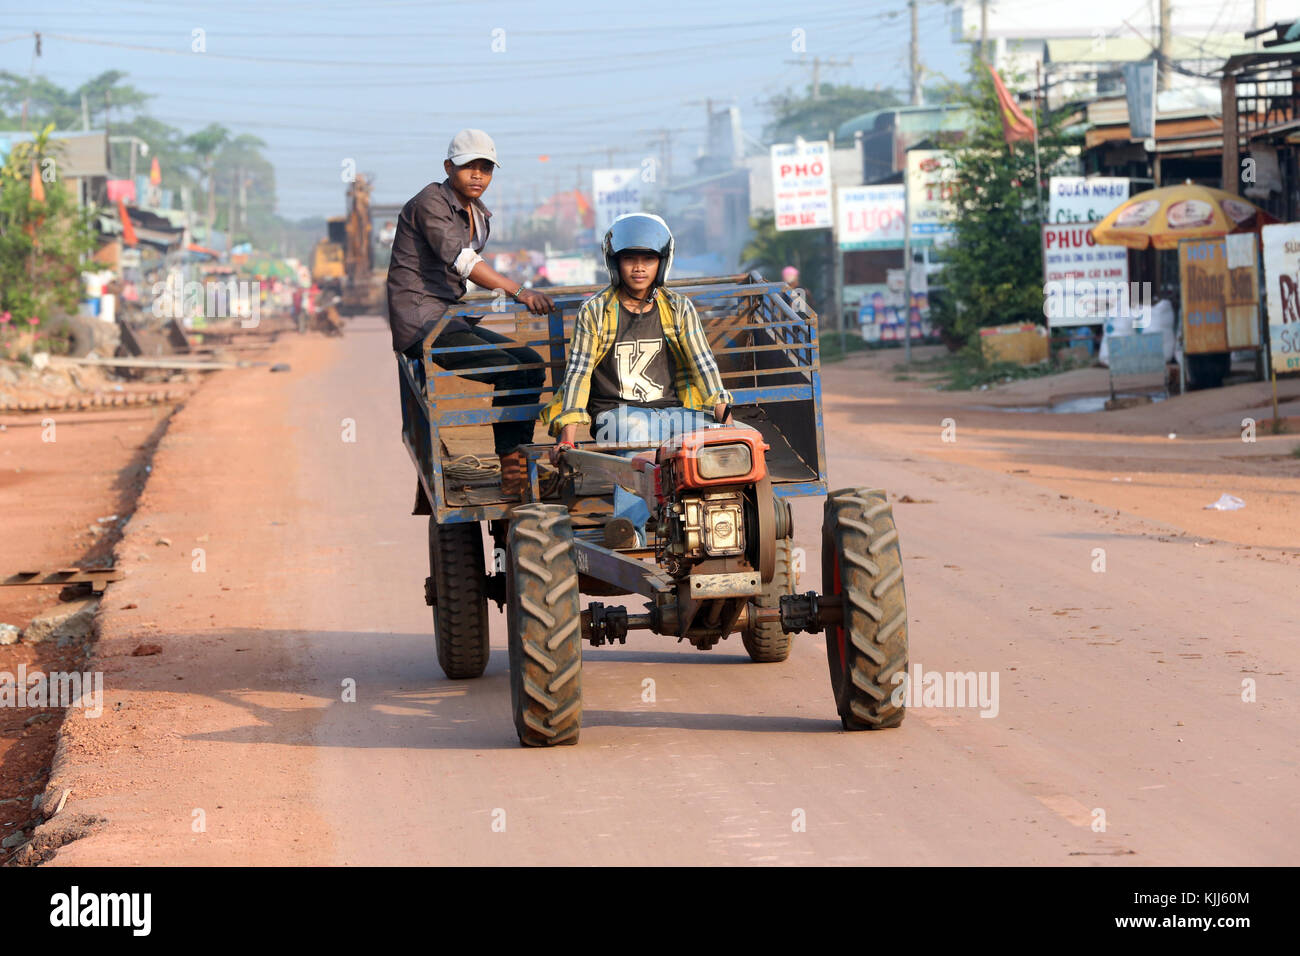 Hommes voyageant sur le tracteur. Thay Ninh. Le Vietnam. Banque D'Images